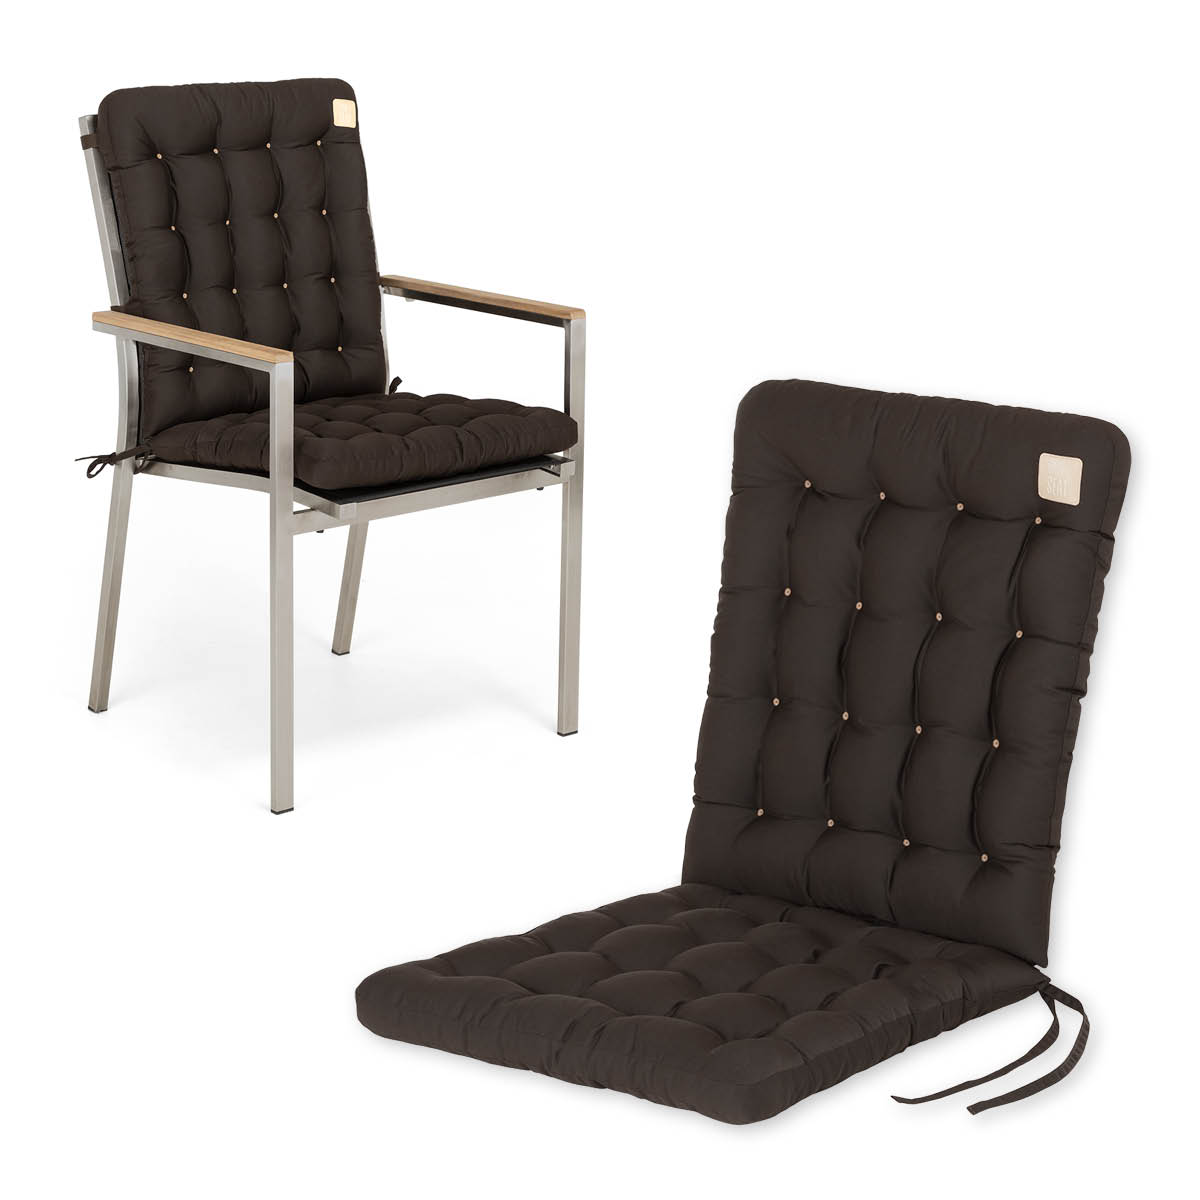 Cuscino per sedia con schienale basso 100x48 cm | Marrone